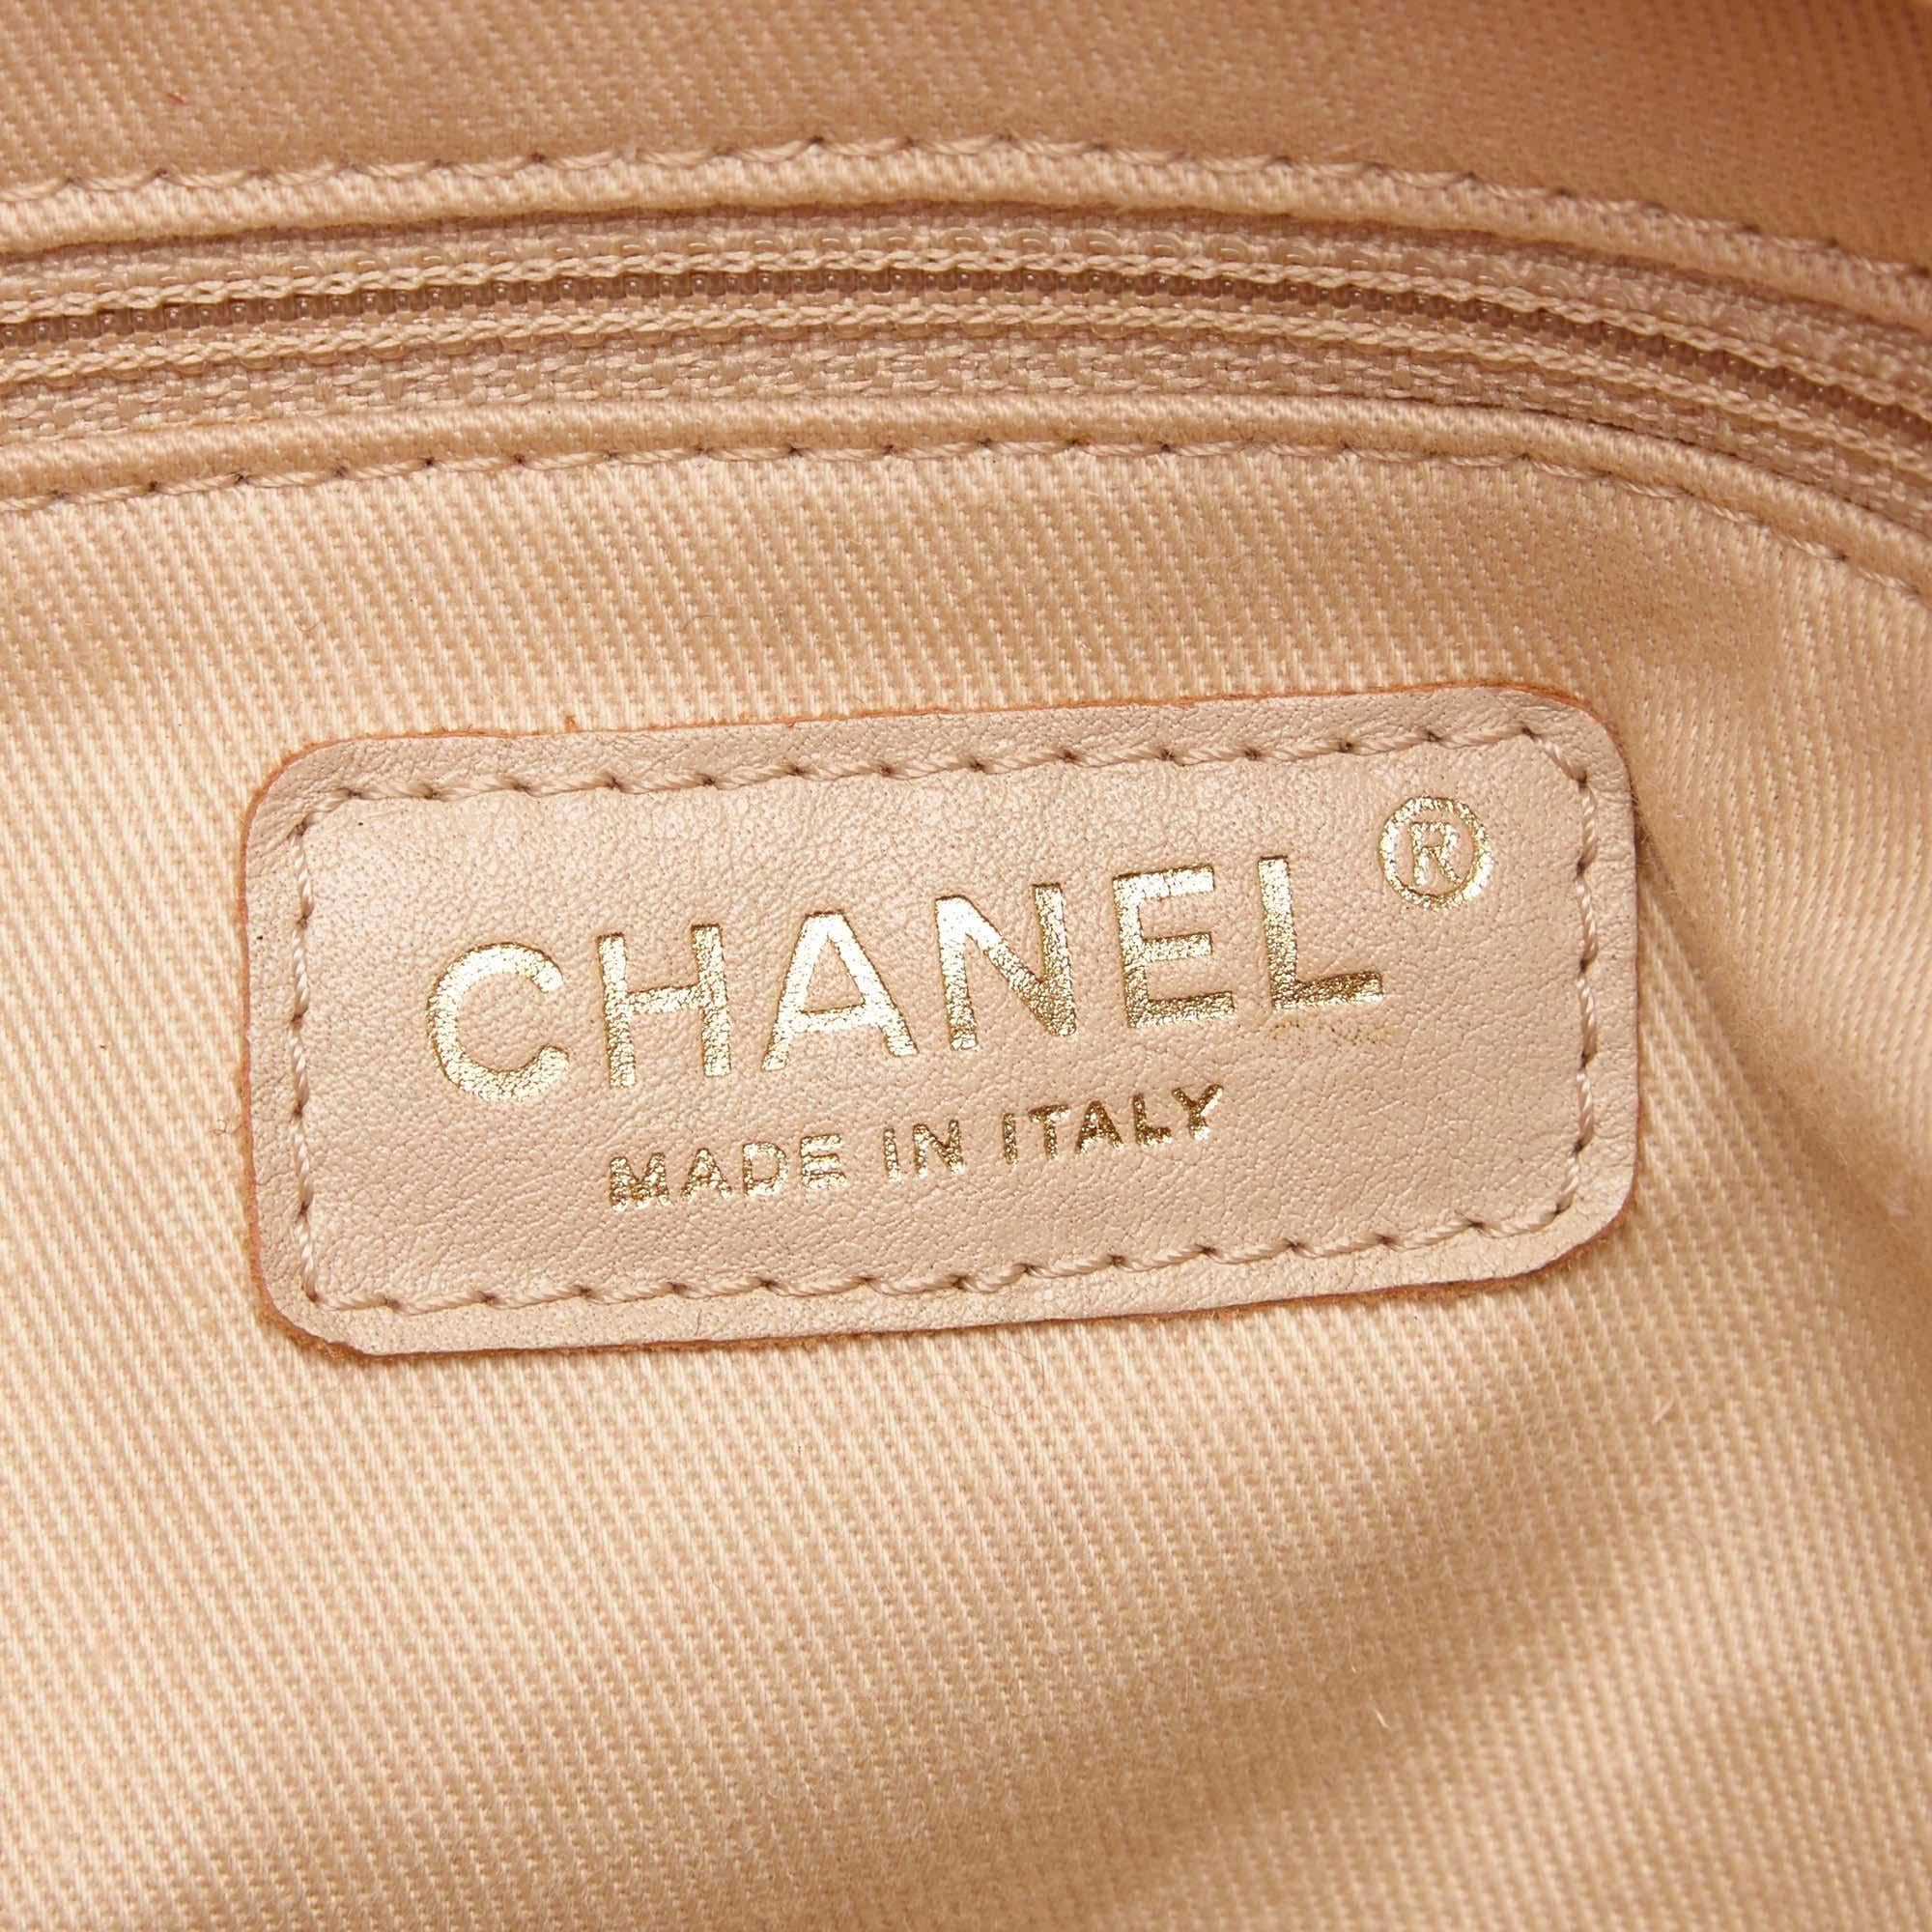 Vintage Authentic Chanel Leather Matelasse Surpique Handbag w Dust Bag MEDIUM  For Sale 1